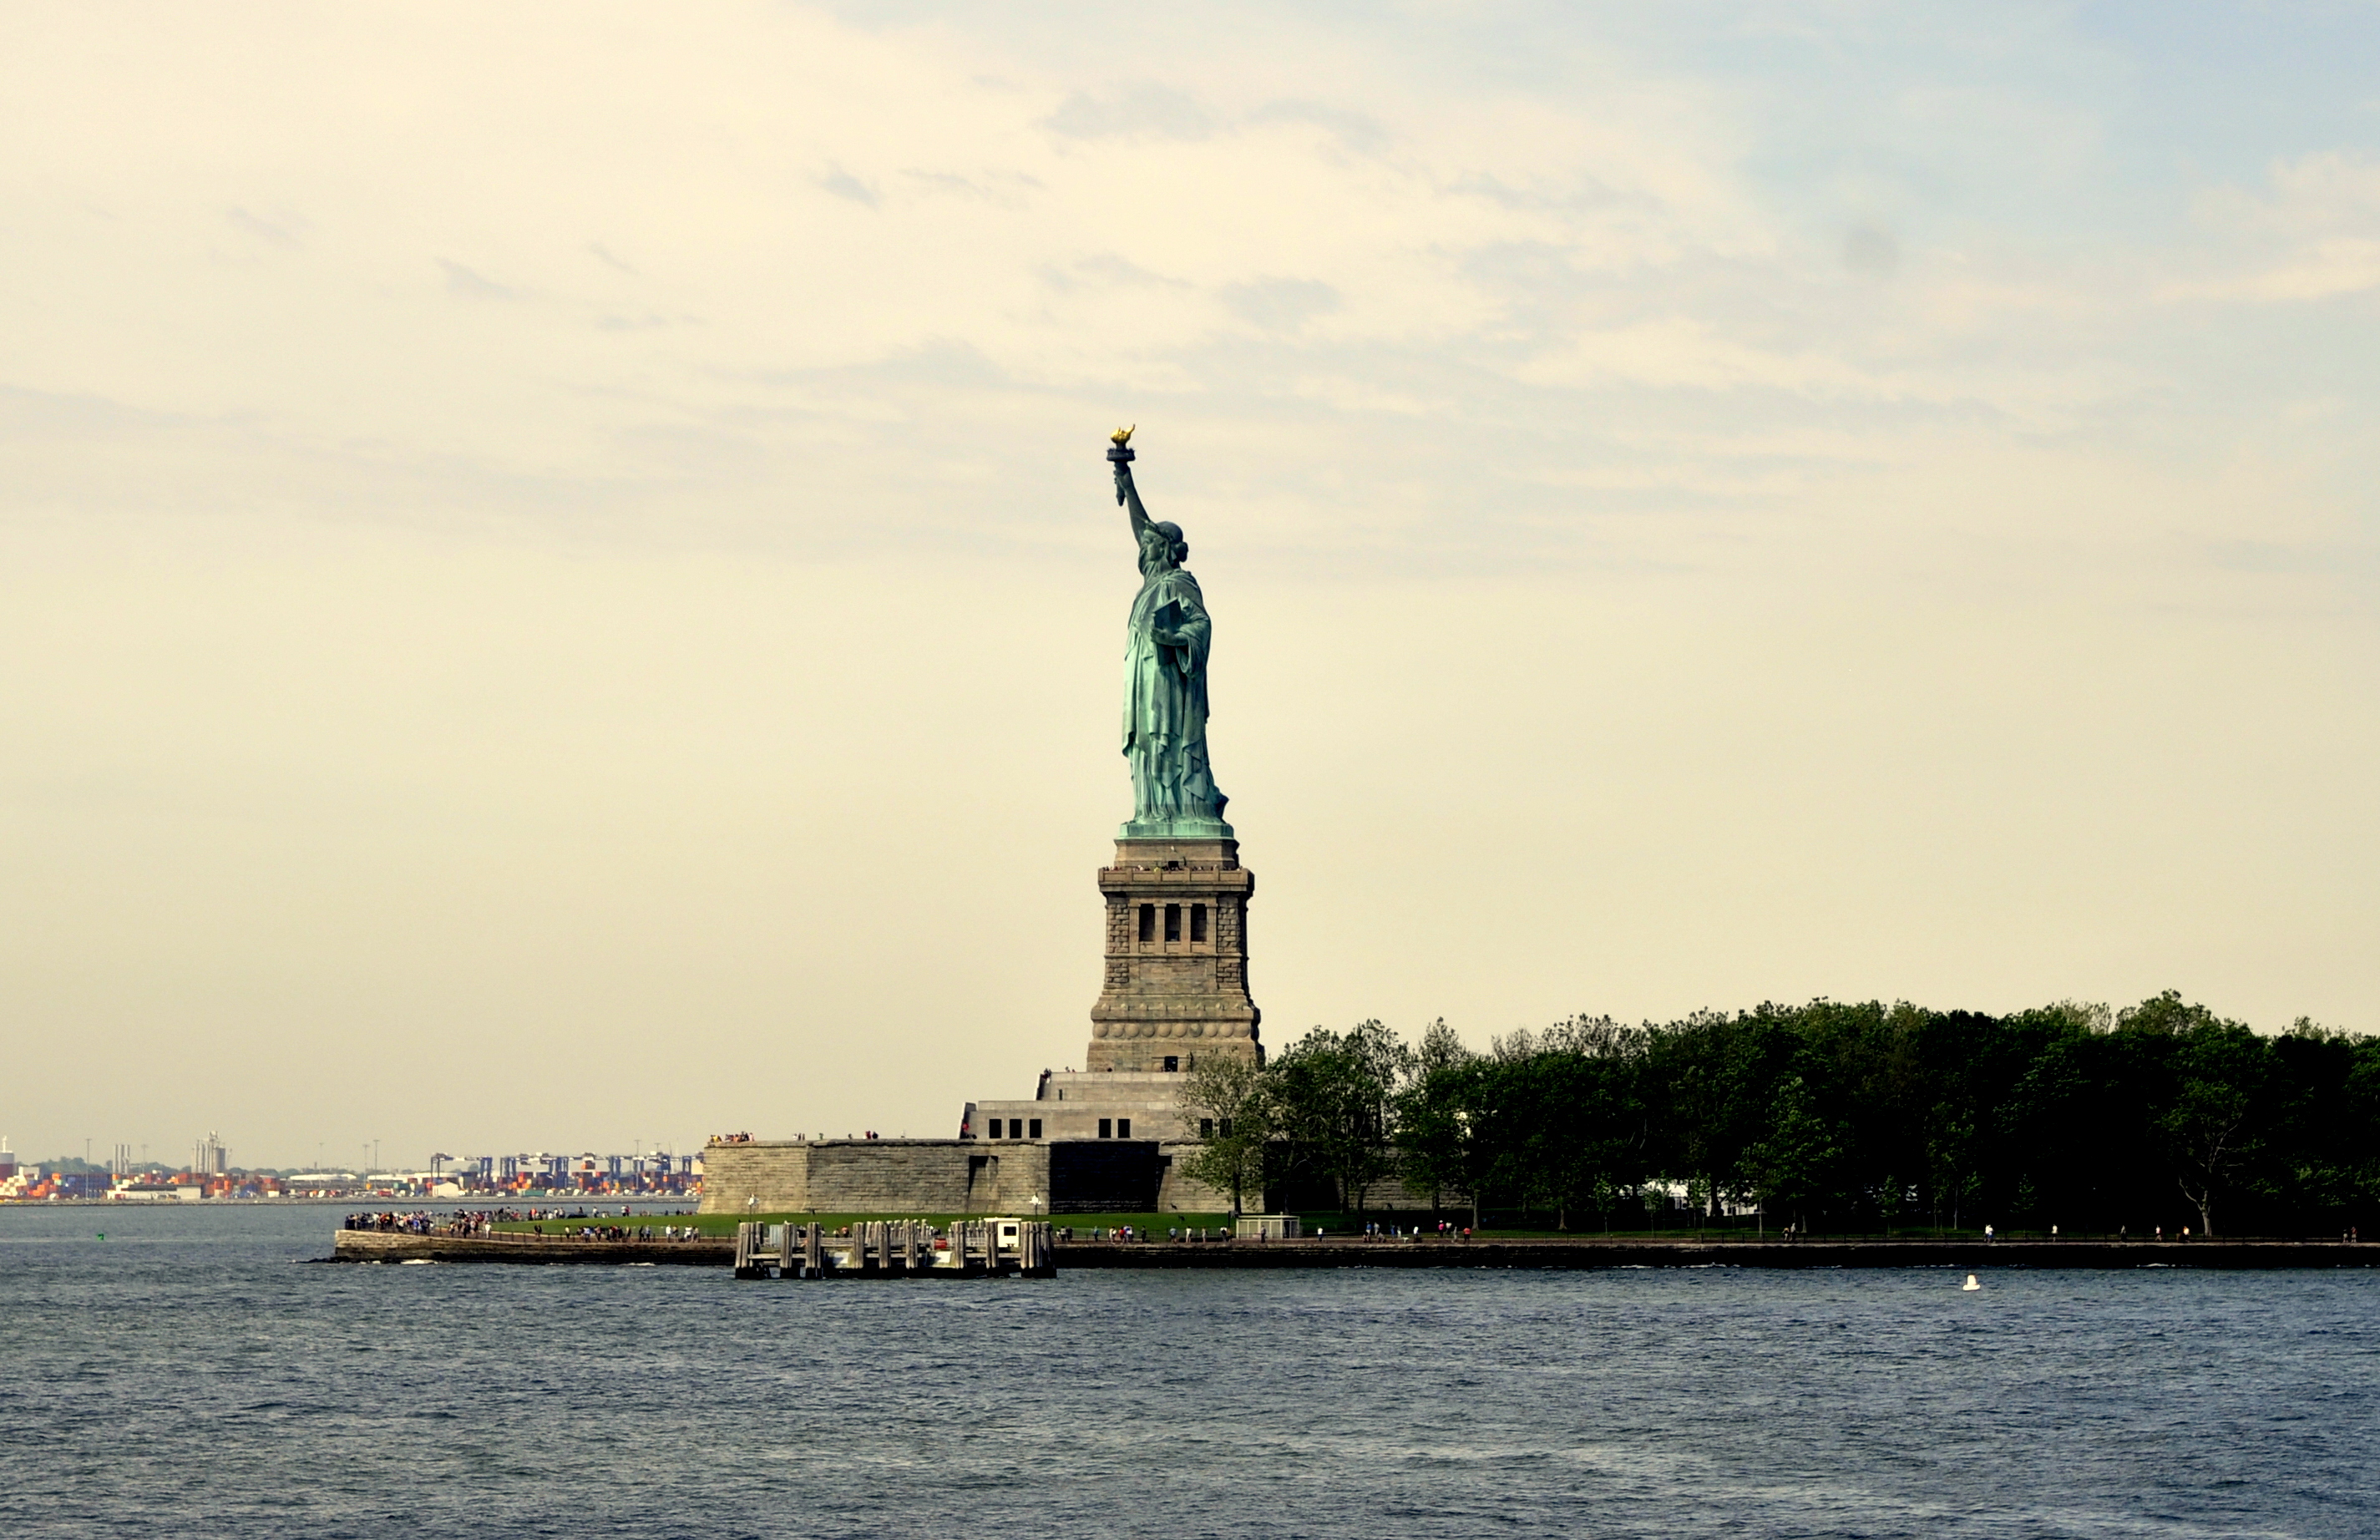 来纽约当然不能错过最具标志性的自由女神像 | GoUSA